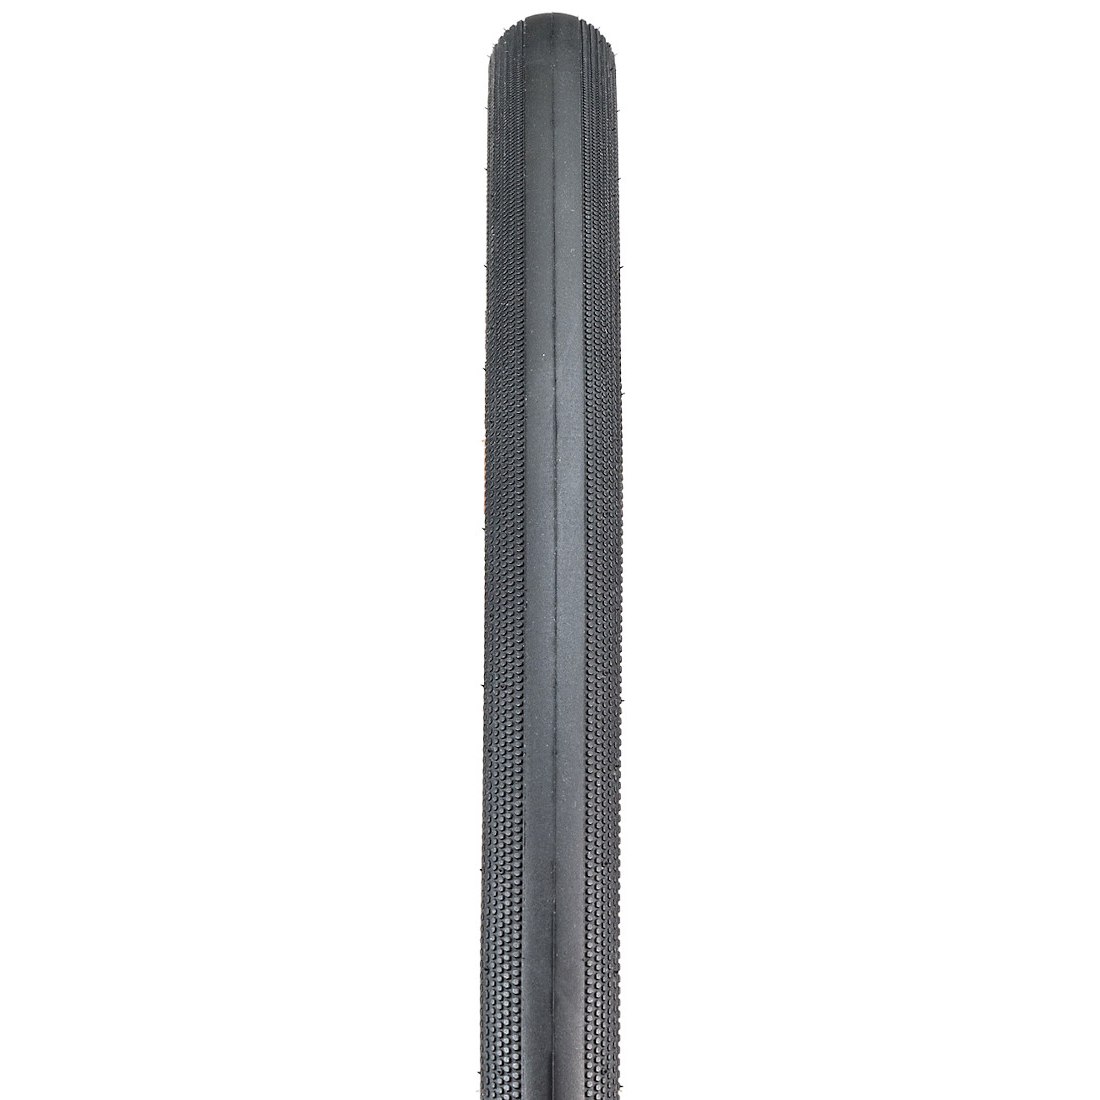 Bontrager R3 Hard-Case Lite TLR Skinwall Folding Tire - 32-622